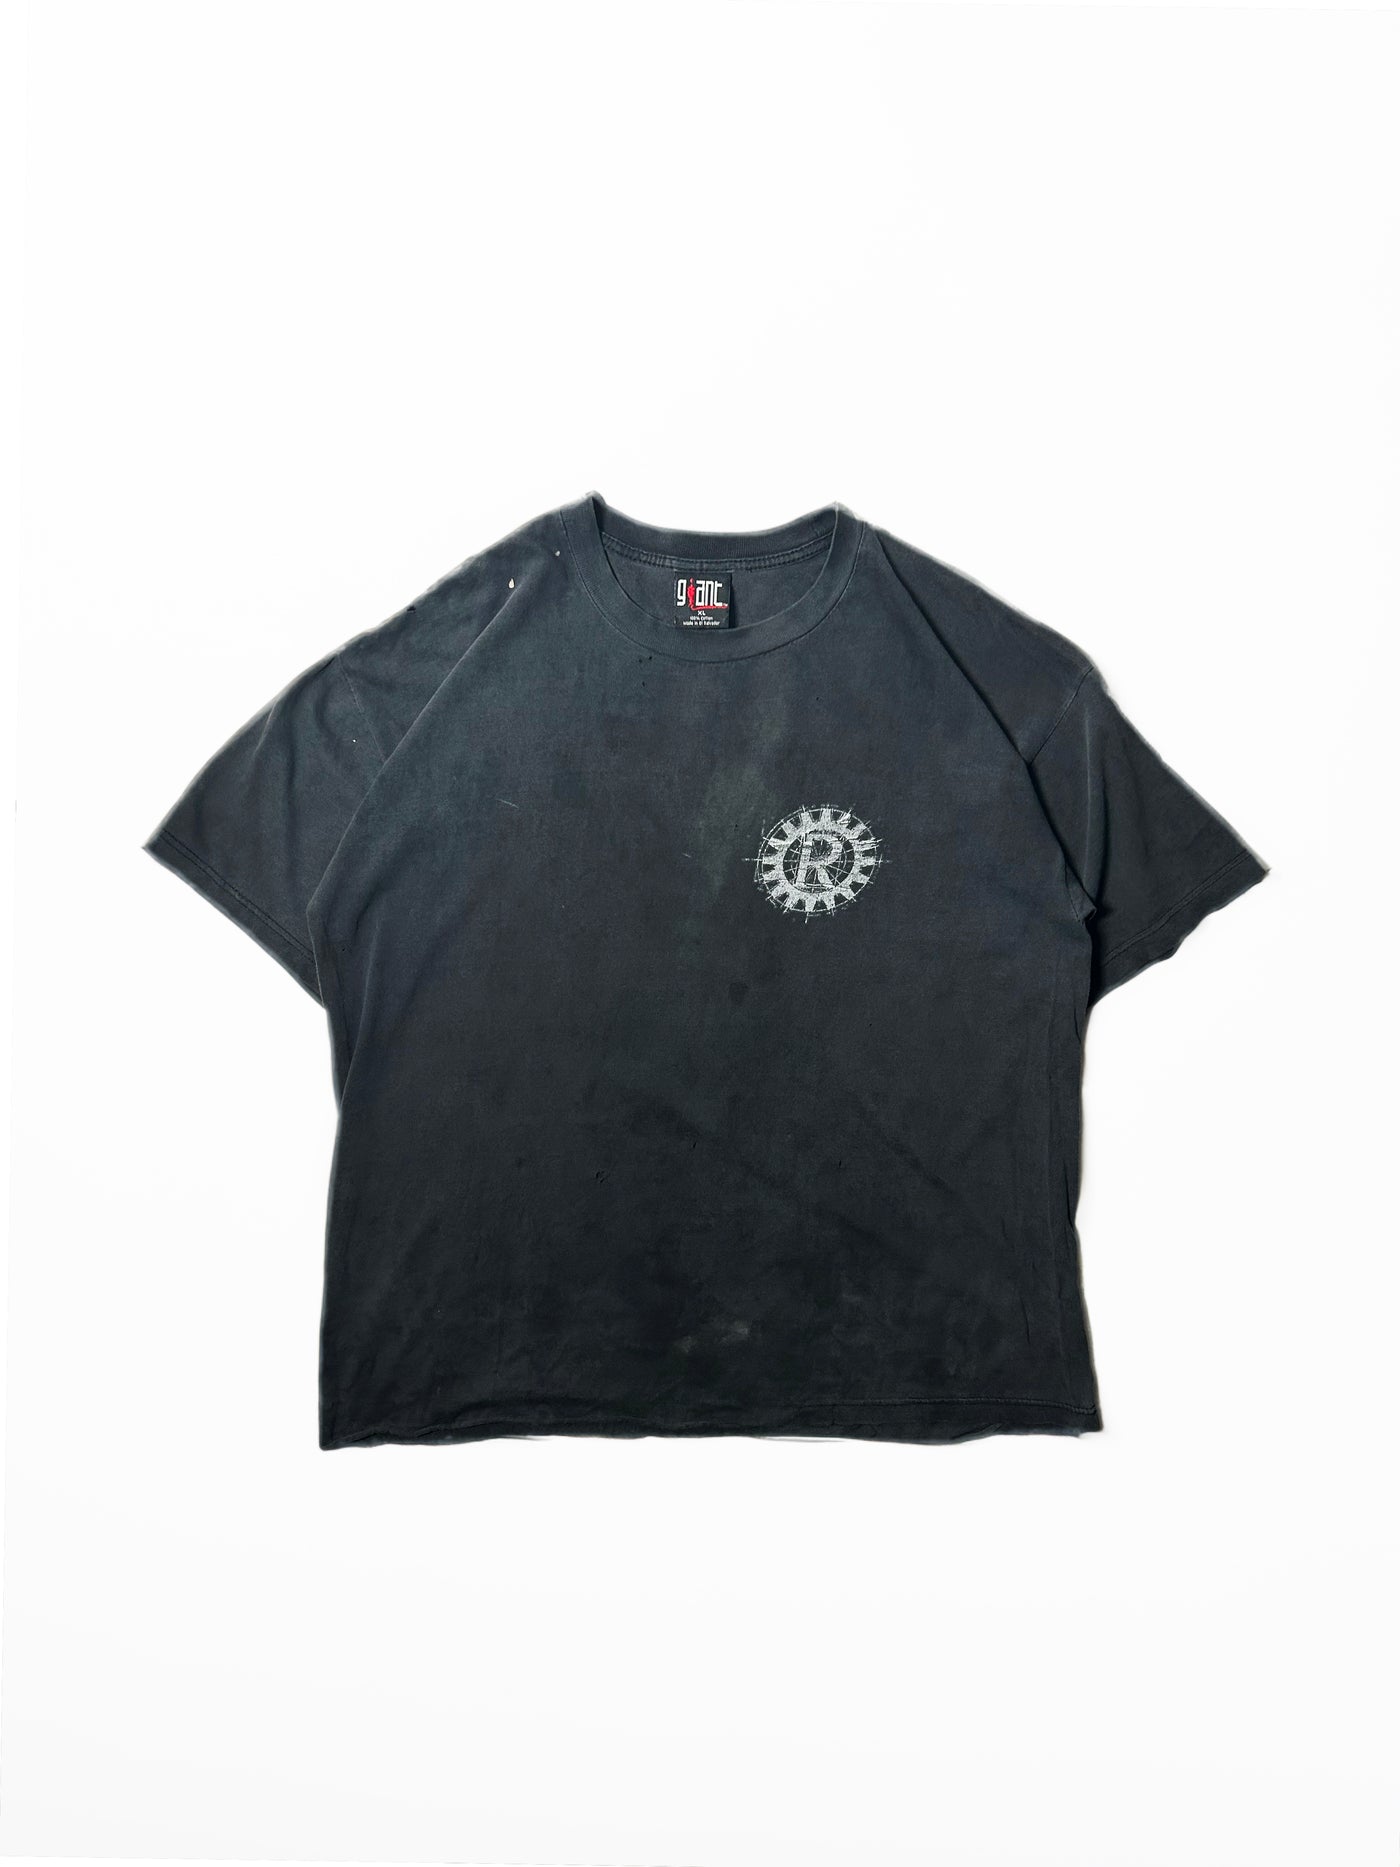 Vintage 1998 Rage Against the Machine Tour T-Shirt